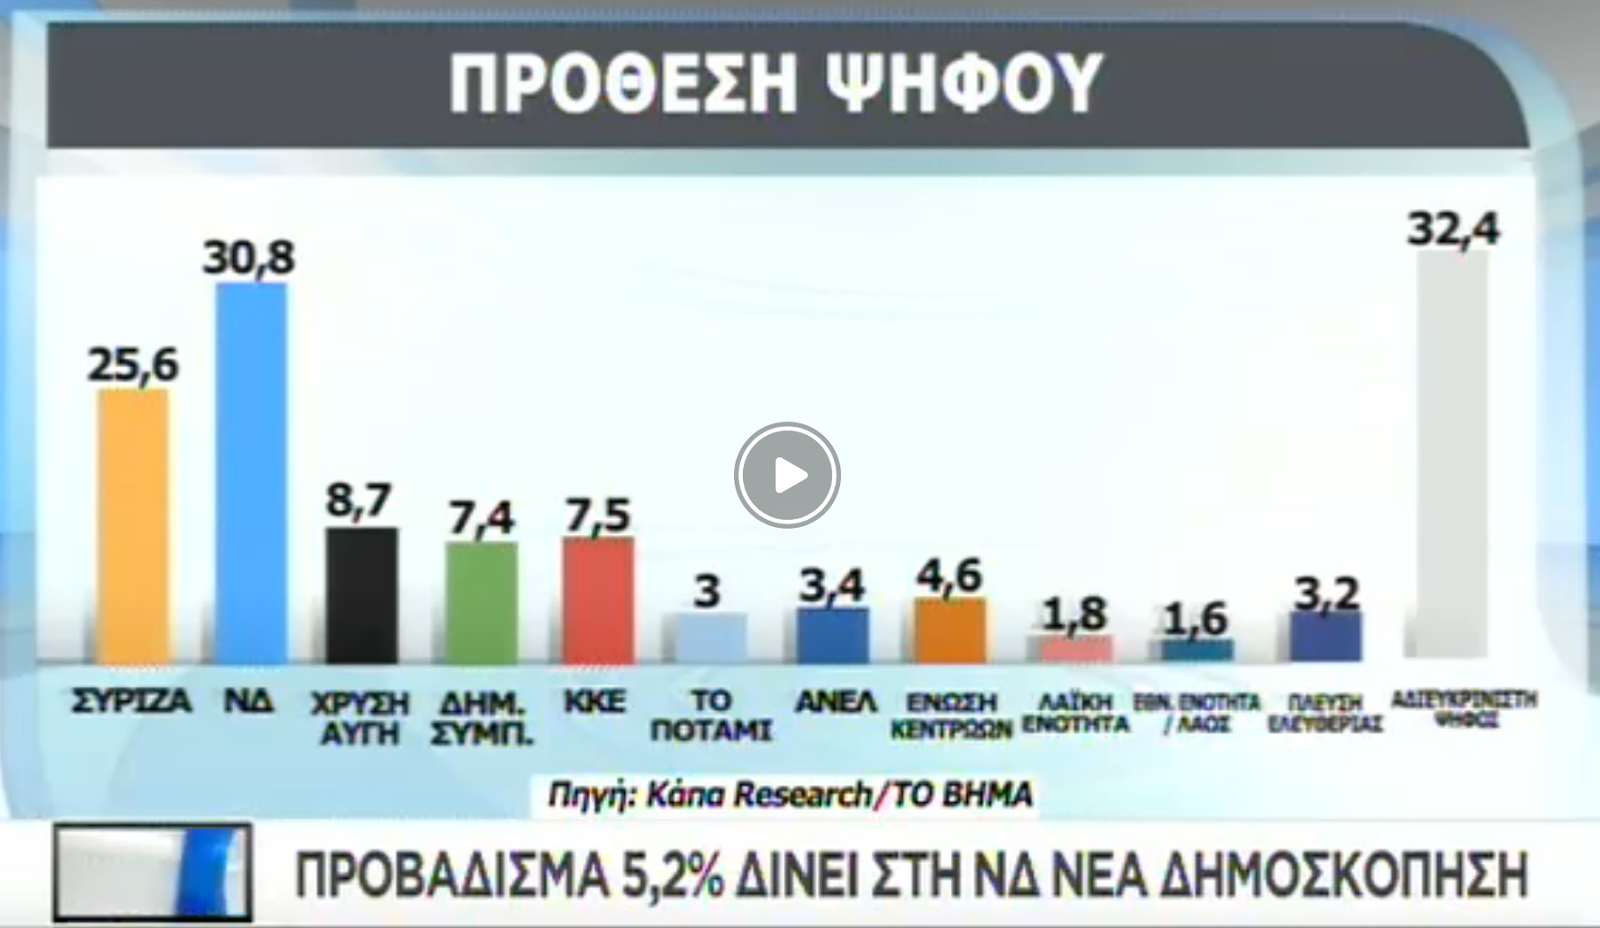 Ο Φάνης Ζουρόπουλος εξηγεί τι συνιστά το 25% του ΣΥΡΙΖΑ που φαίνεται ακόμα να αντέχει στις δημοσκοπήσεις. Εντοπίζει τρεις κατηγορίες που όλοι μαζί συγκροτούν ένα ιδιότυπο μείγμα ανθρώπων χωρίς συγκεκριμένη ιδεολογική ταυτότητα. new deal